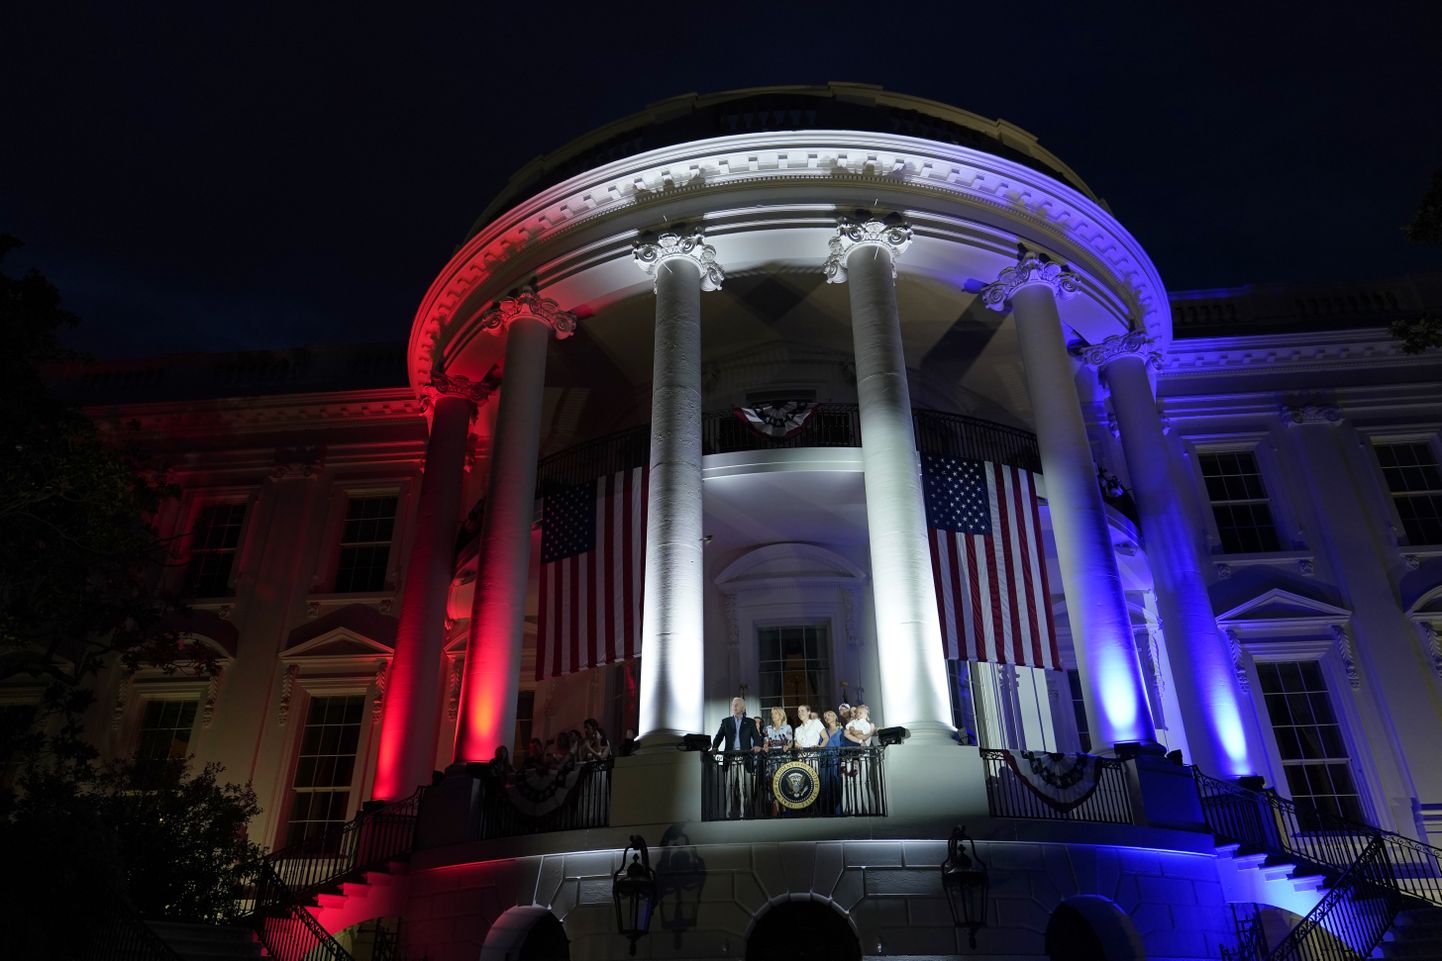 USAs tähistati 4. juulil iseseisvuspäeva. Pildil presidendi residents Valge Maja USA lipu värvides. Rõdul on USA president Joe Bideni ja tema pereliikmed